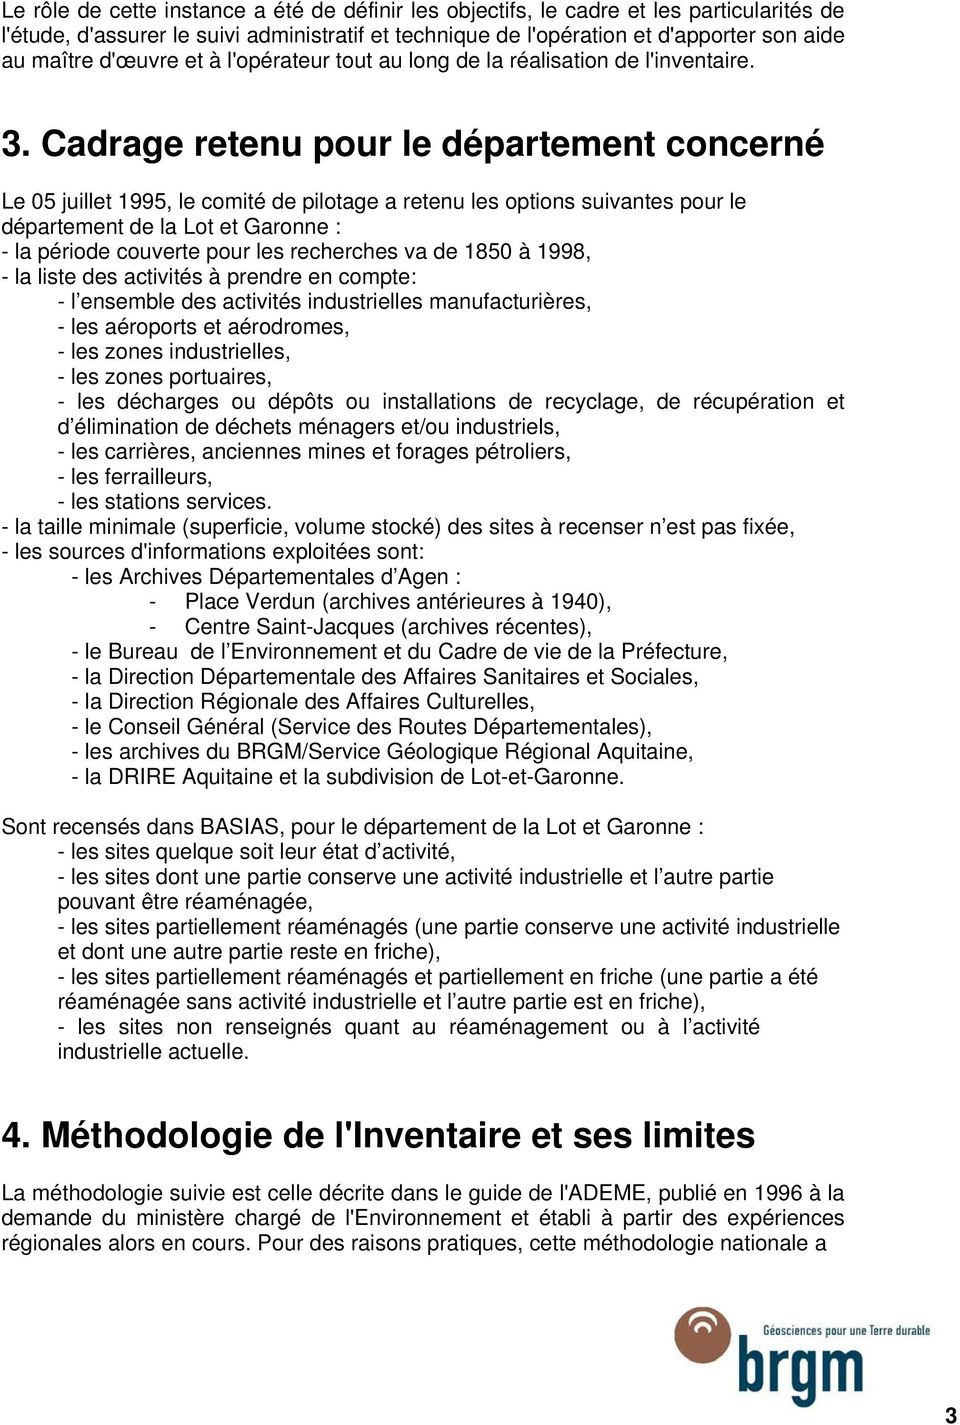 Cadrage retenu pour le département concerné Le 05 juillet 1995, le comité de pilotage a retenu les options suivantes pour le département de la Lot et Garonne : - la période couverte pour les